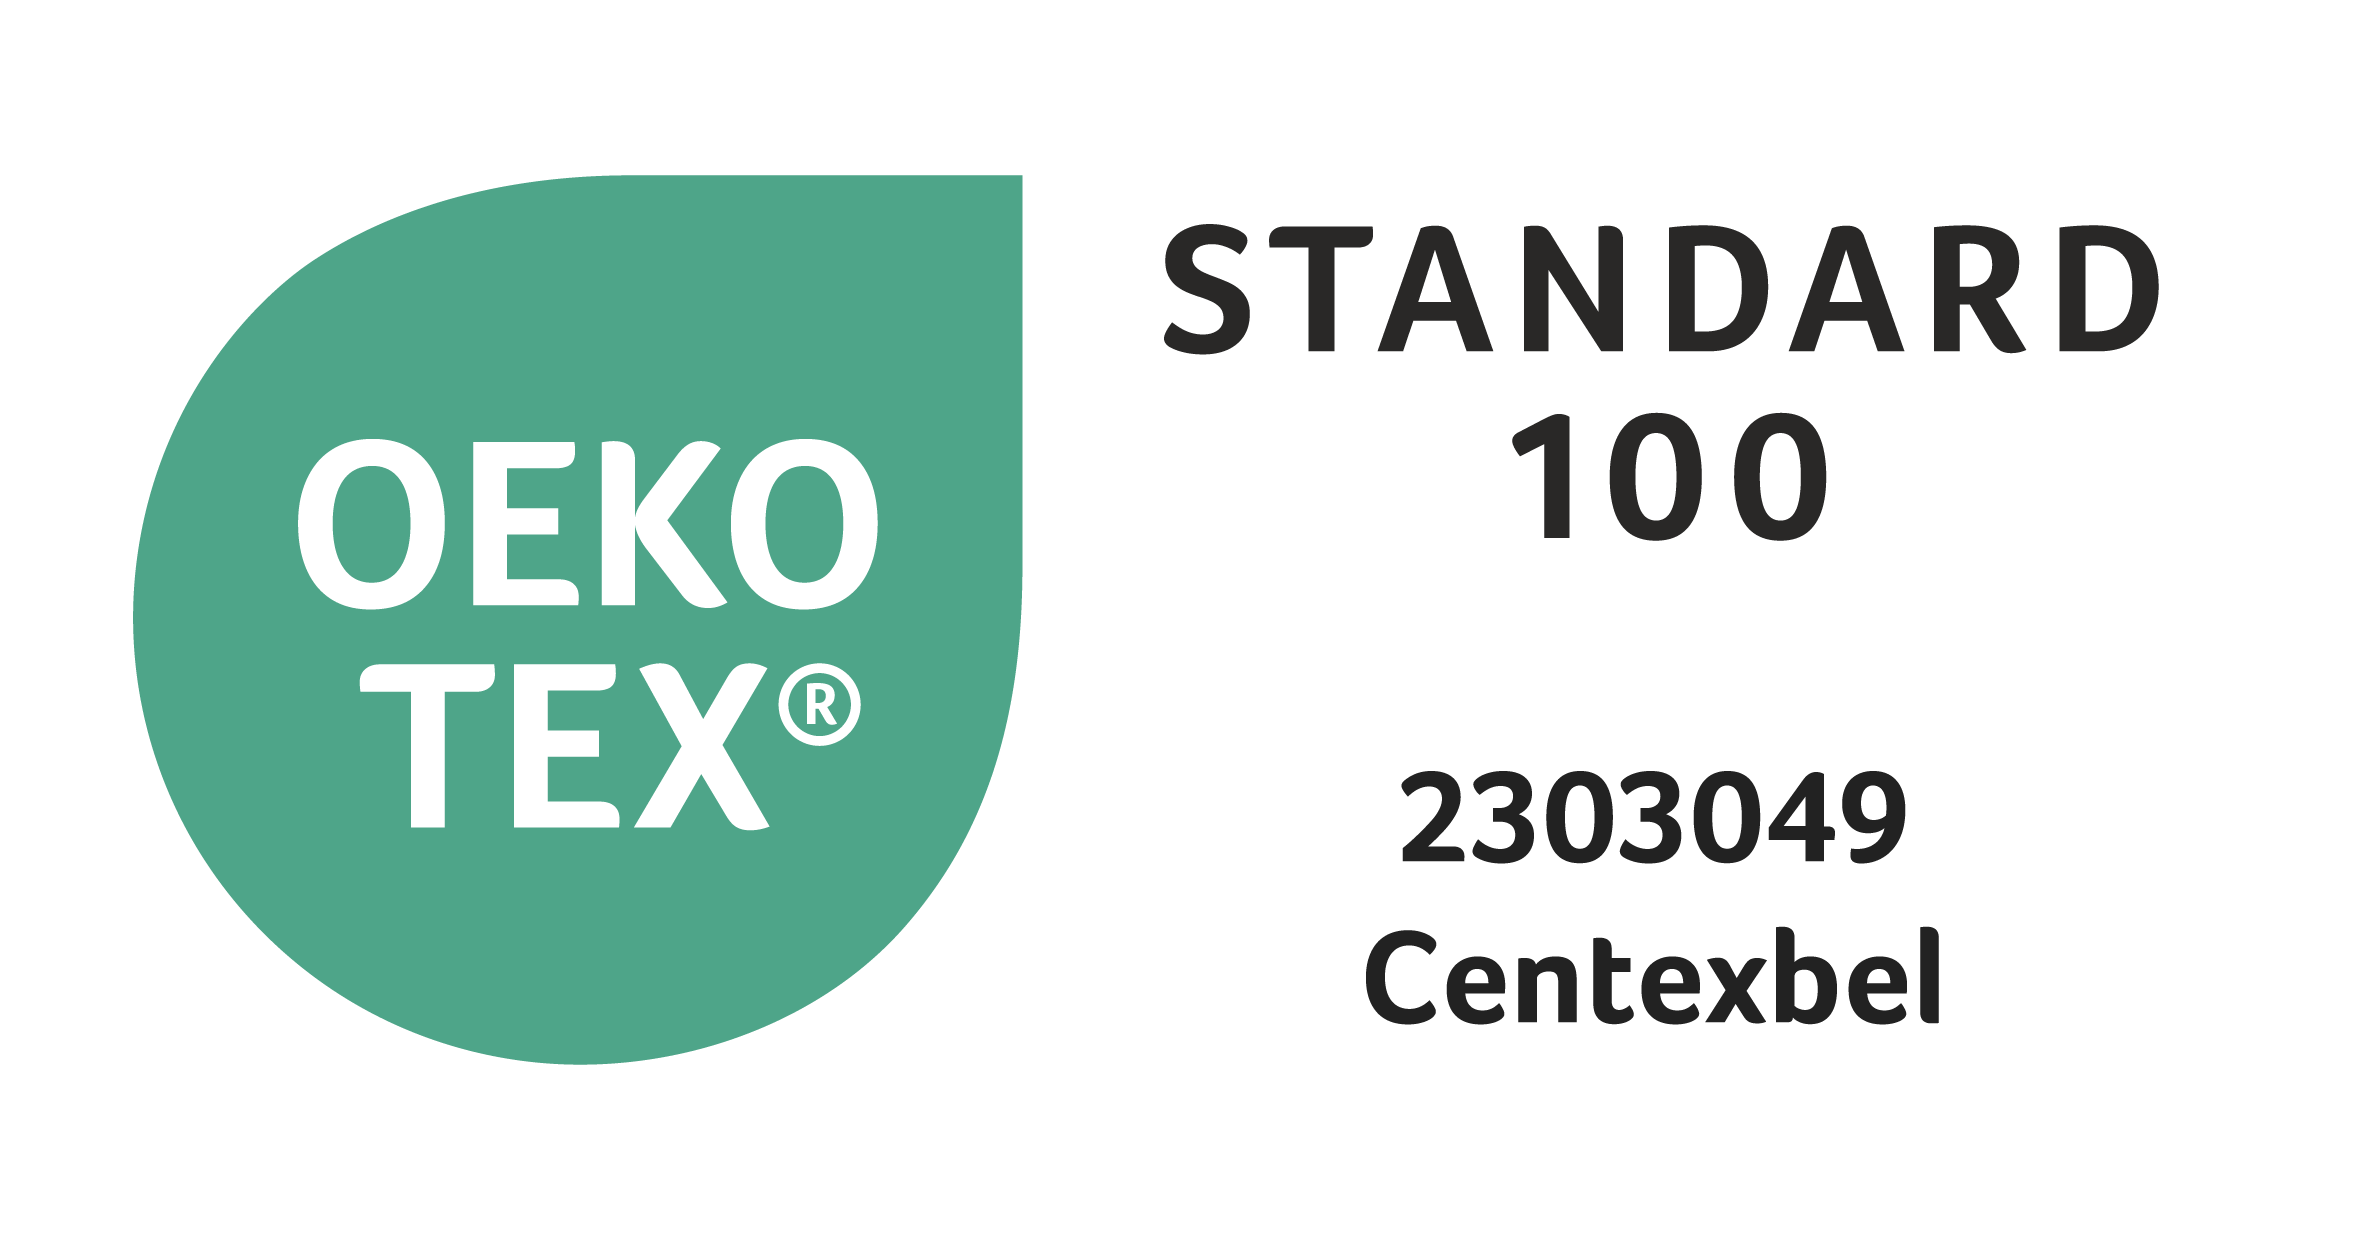 Geprüft auf Schadstoffe nach Oeko-Tex® Standard 100 (2303049/Centexbel)